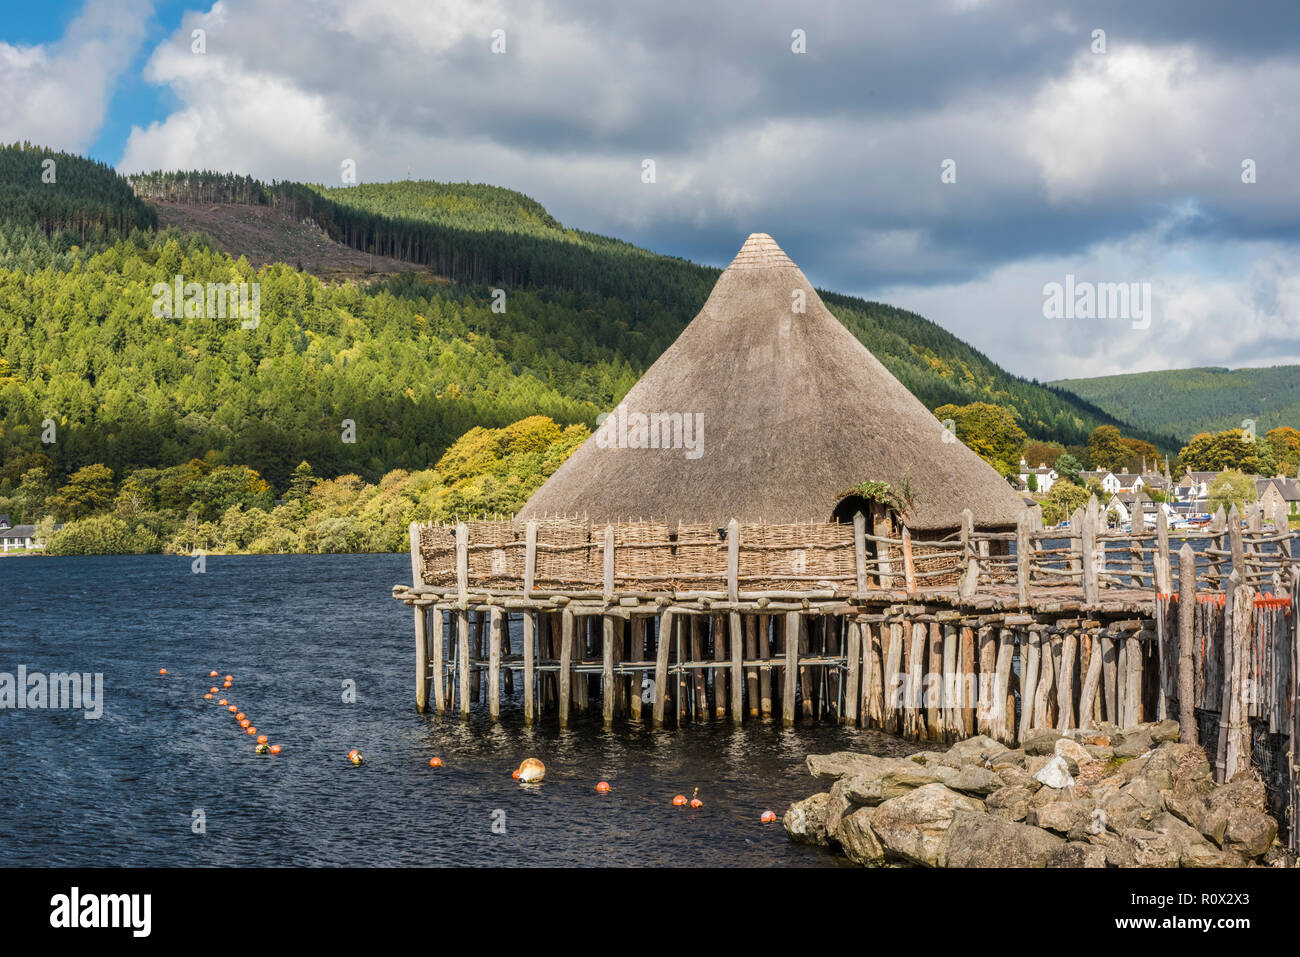 Le Centre écossais sur le Loch Tay Crannog, près de Kenmore, Perthshire, Écosse Banque D'Images